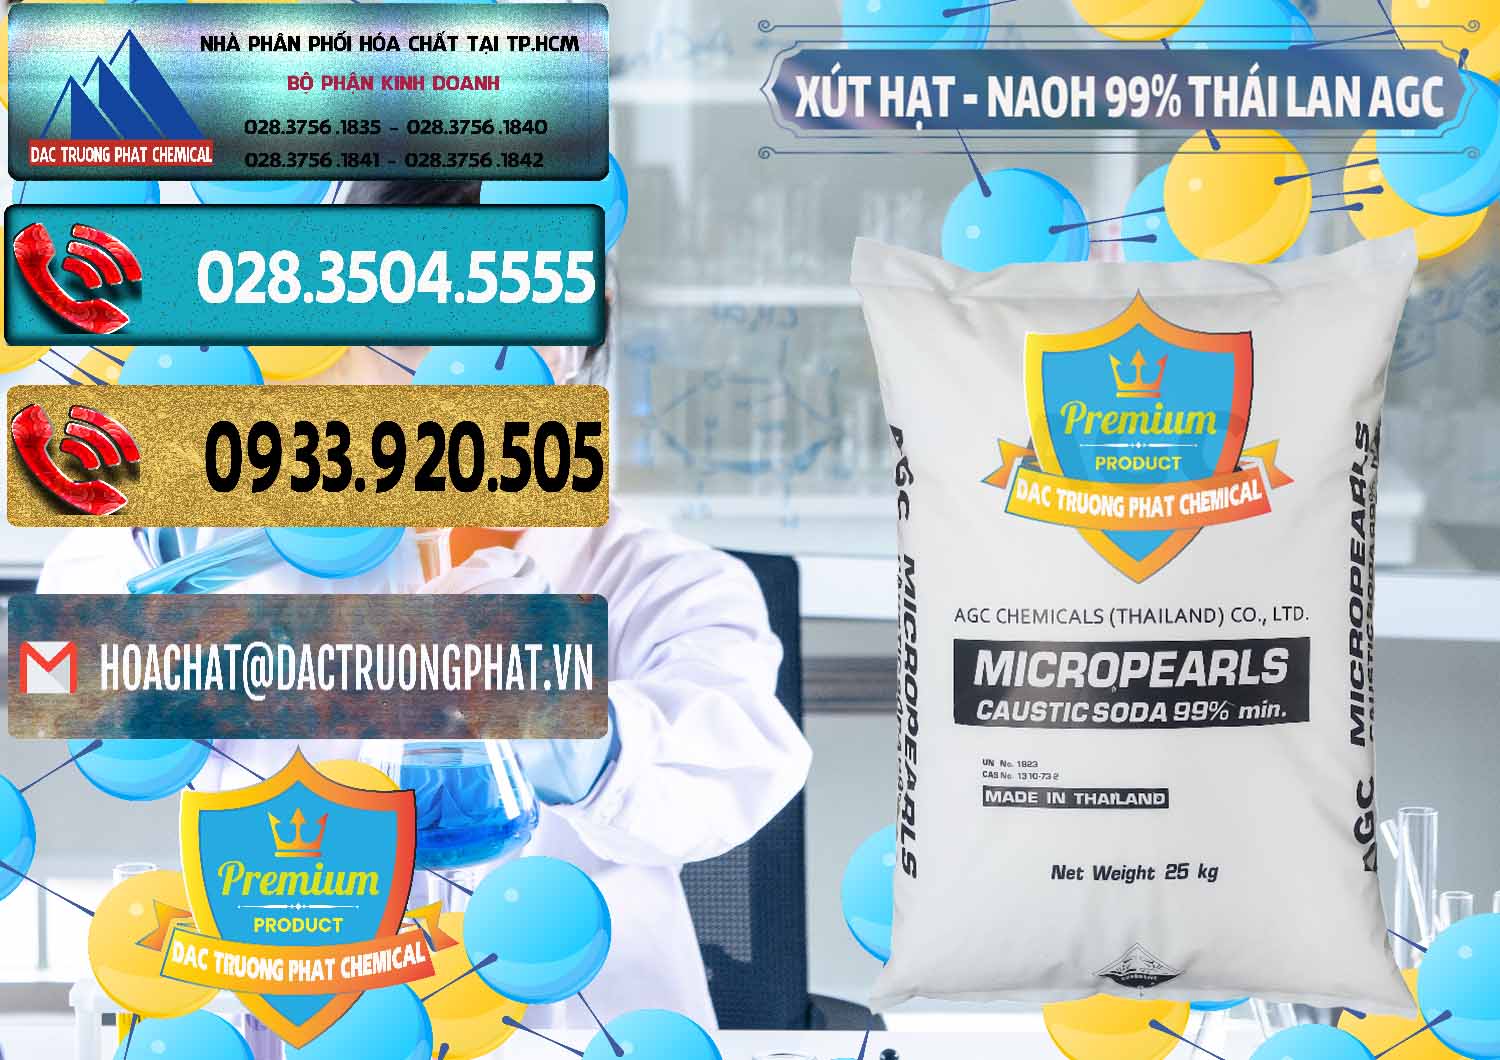 Nơi bán _ cung ứng Xút Hạt - NaOH Bột 99% AGC Thái Lan - 0168 - Nơi nhập khẩu _ phân phối hóa chất tại TP.HCM - hoachatdetnhuom.com